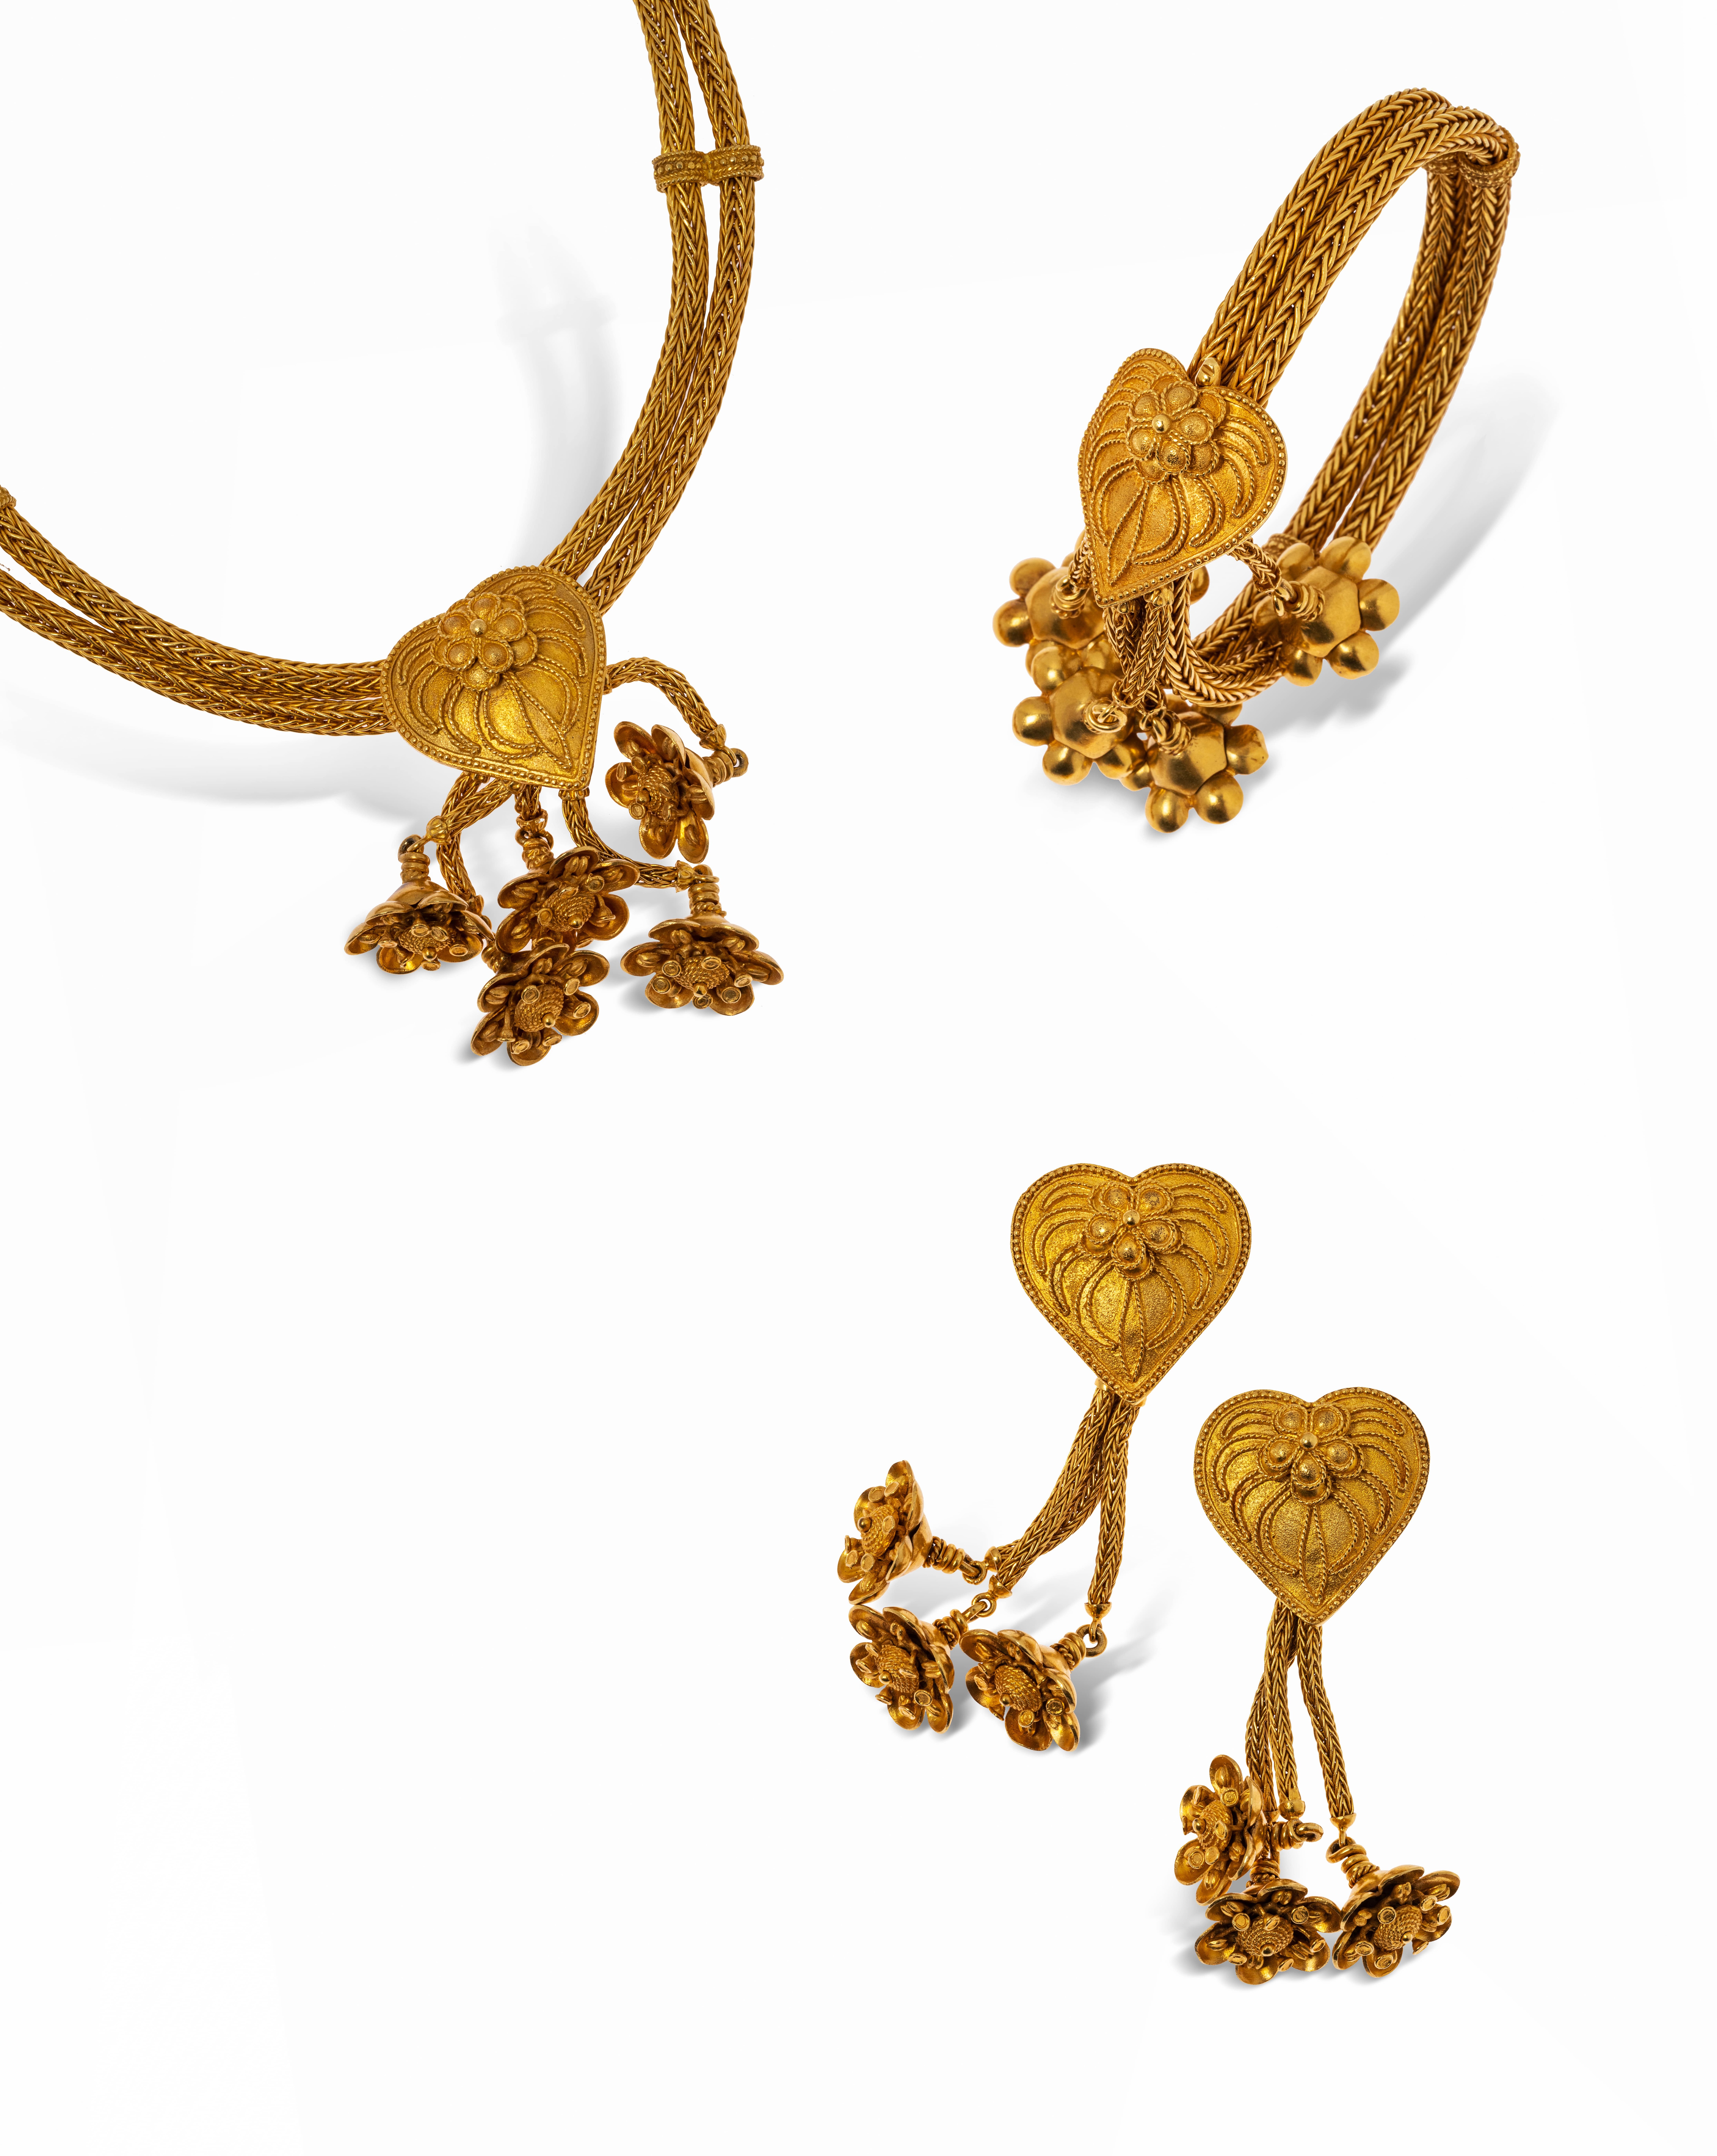 Lot 149 : ZOLOTAS parure en or 18K comprenant : un collier double liens centré d'un coeur agrémenté de motifs filigranés, retenant en papilles 5 fleurettes, un bracelet souple et une paire de pendants d'oreilles assortis. Travail grec des années 1970. 